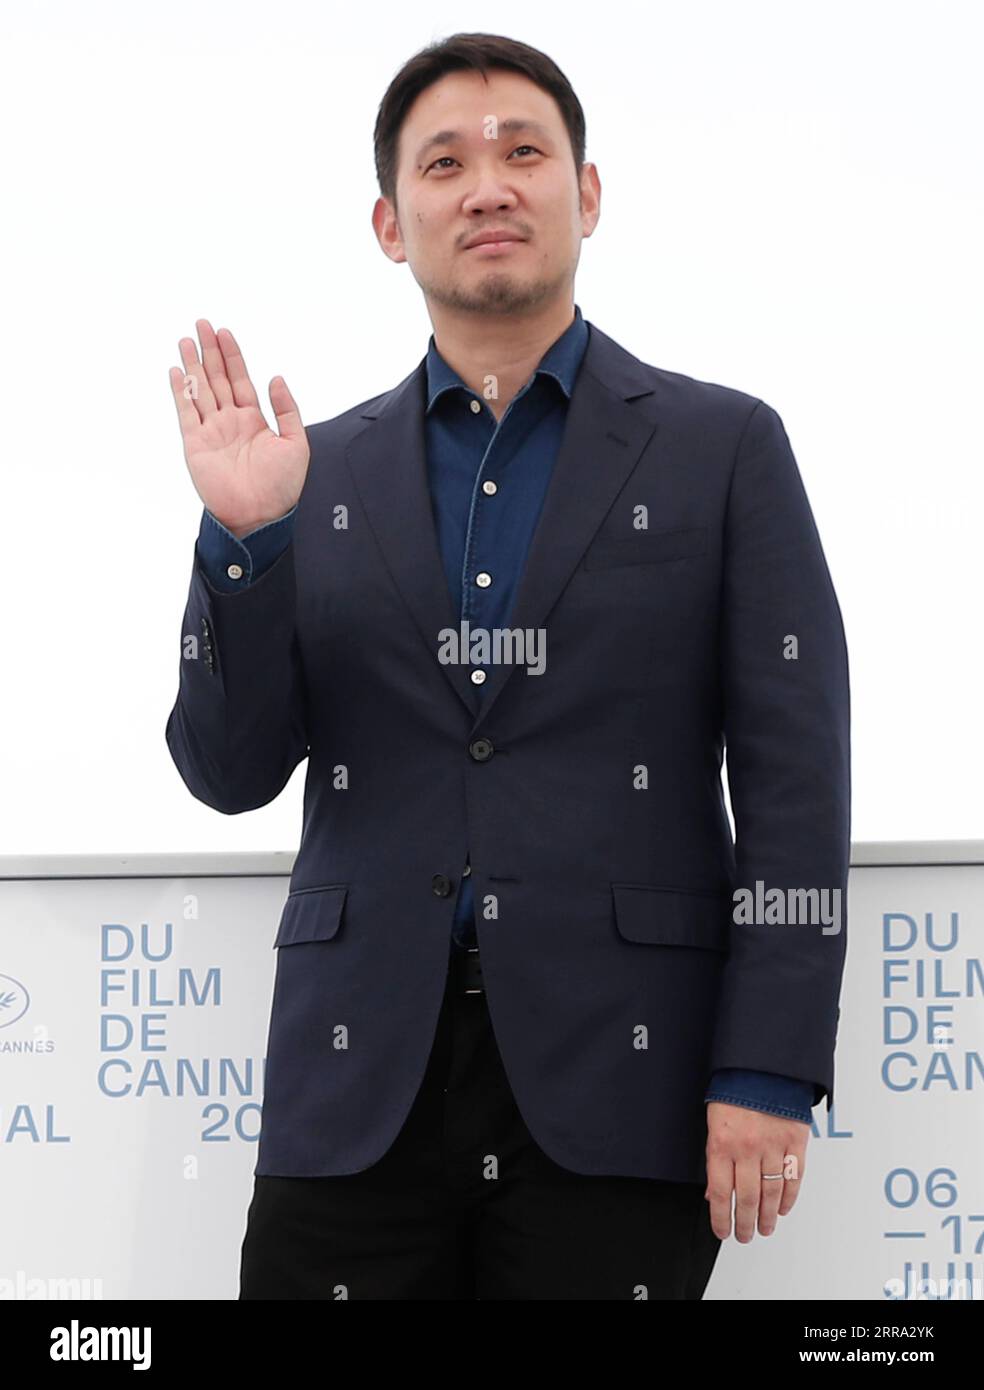 (210712) -- CANNES, 12 juillet 2021 (Xinhua) -- le réalisateur Ruysuke Hamaguchi pose lors du photocall du film 'conduisez ma voiture' au 74e Festival de Cannes, à Cannes, France, le 12 juillet 2021. (Xinhua) Banque D'Images